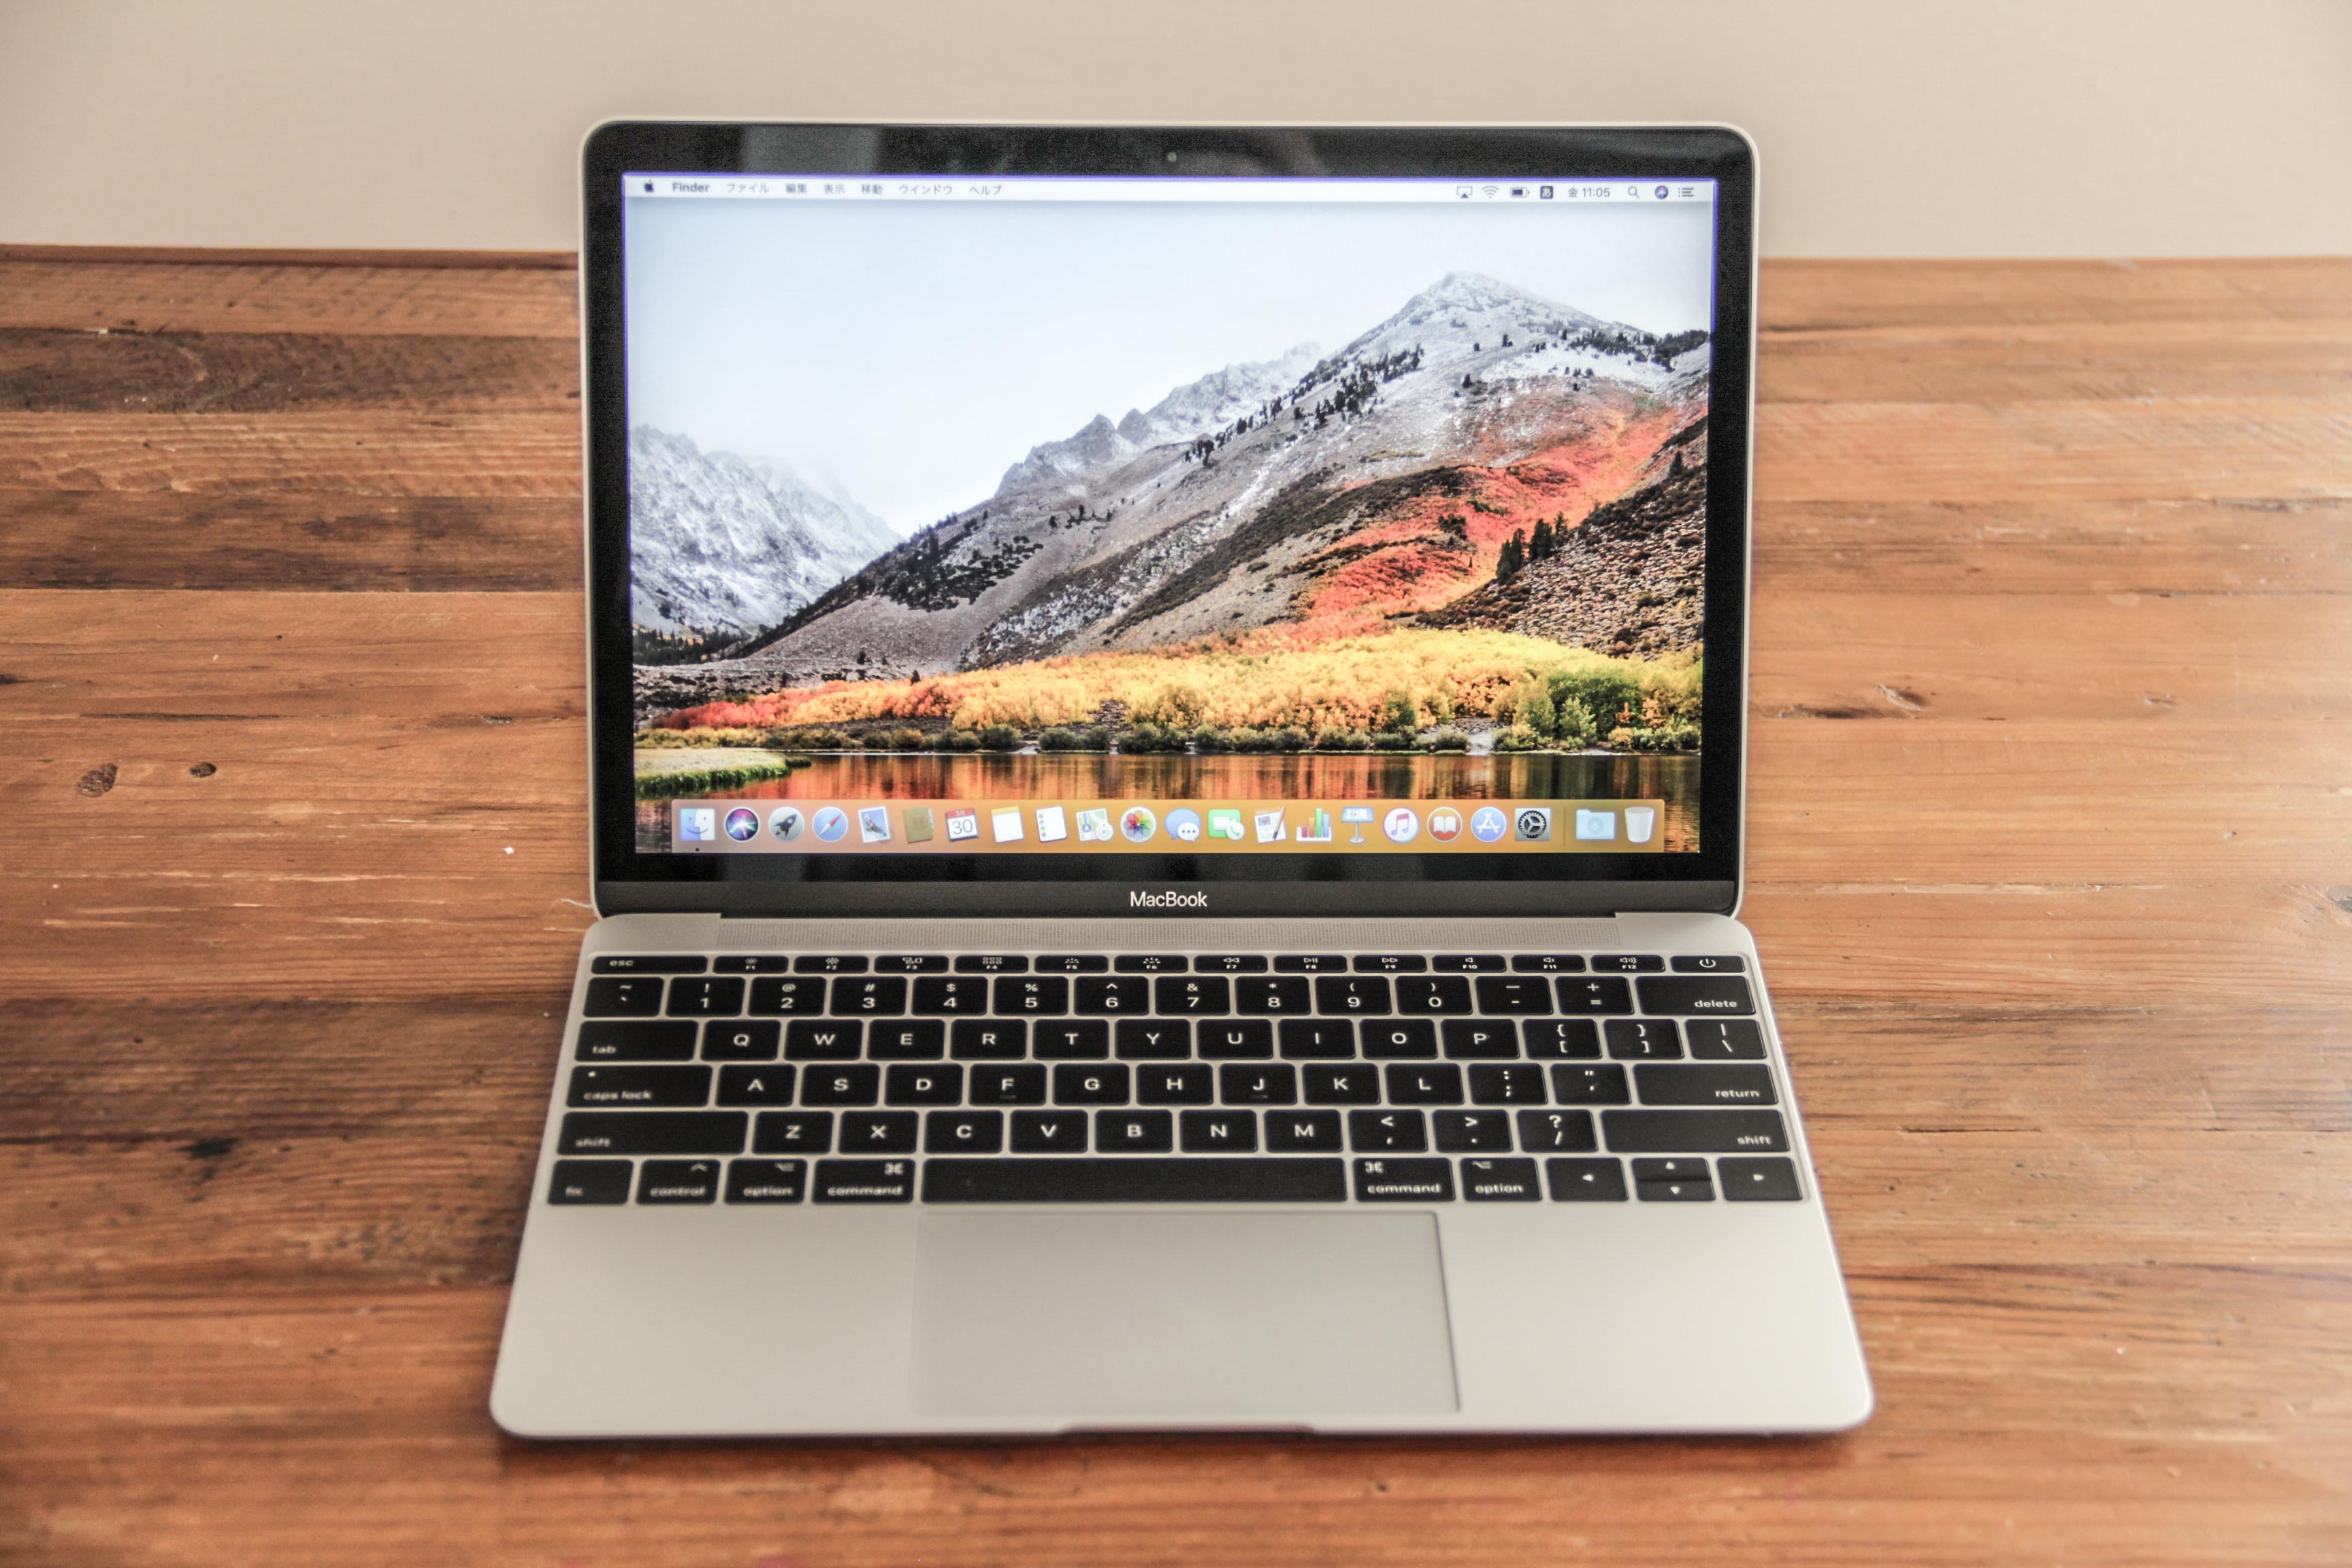 MacBook 12インチ 16GBモデル レビュー! 購入(価格) と使用感は?